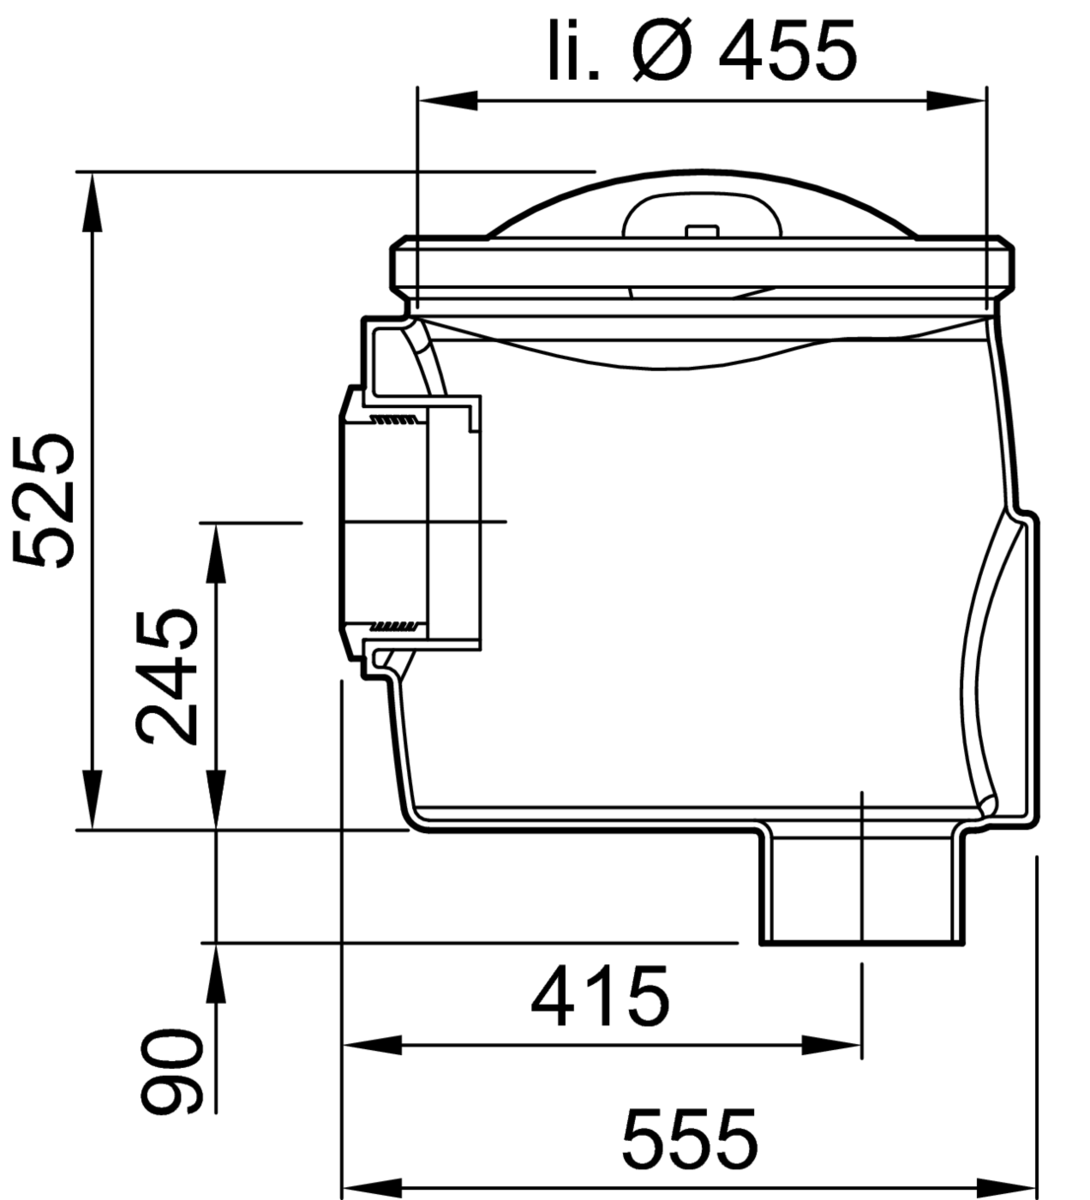 Esquema técnico do câmara para recolha de amostras com ligação DN150 e saida vertical, realizado em polietileno de alta denisdade (HDPE). De dimensões Ø455 H525.